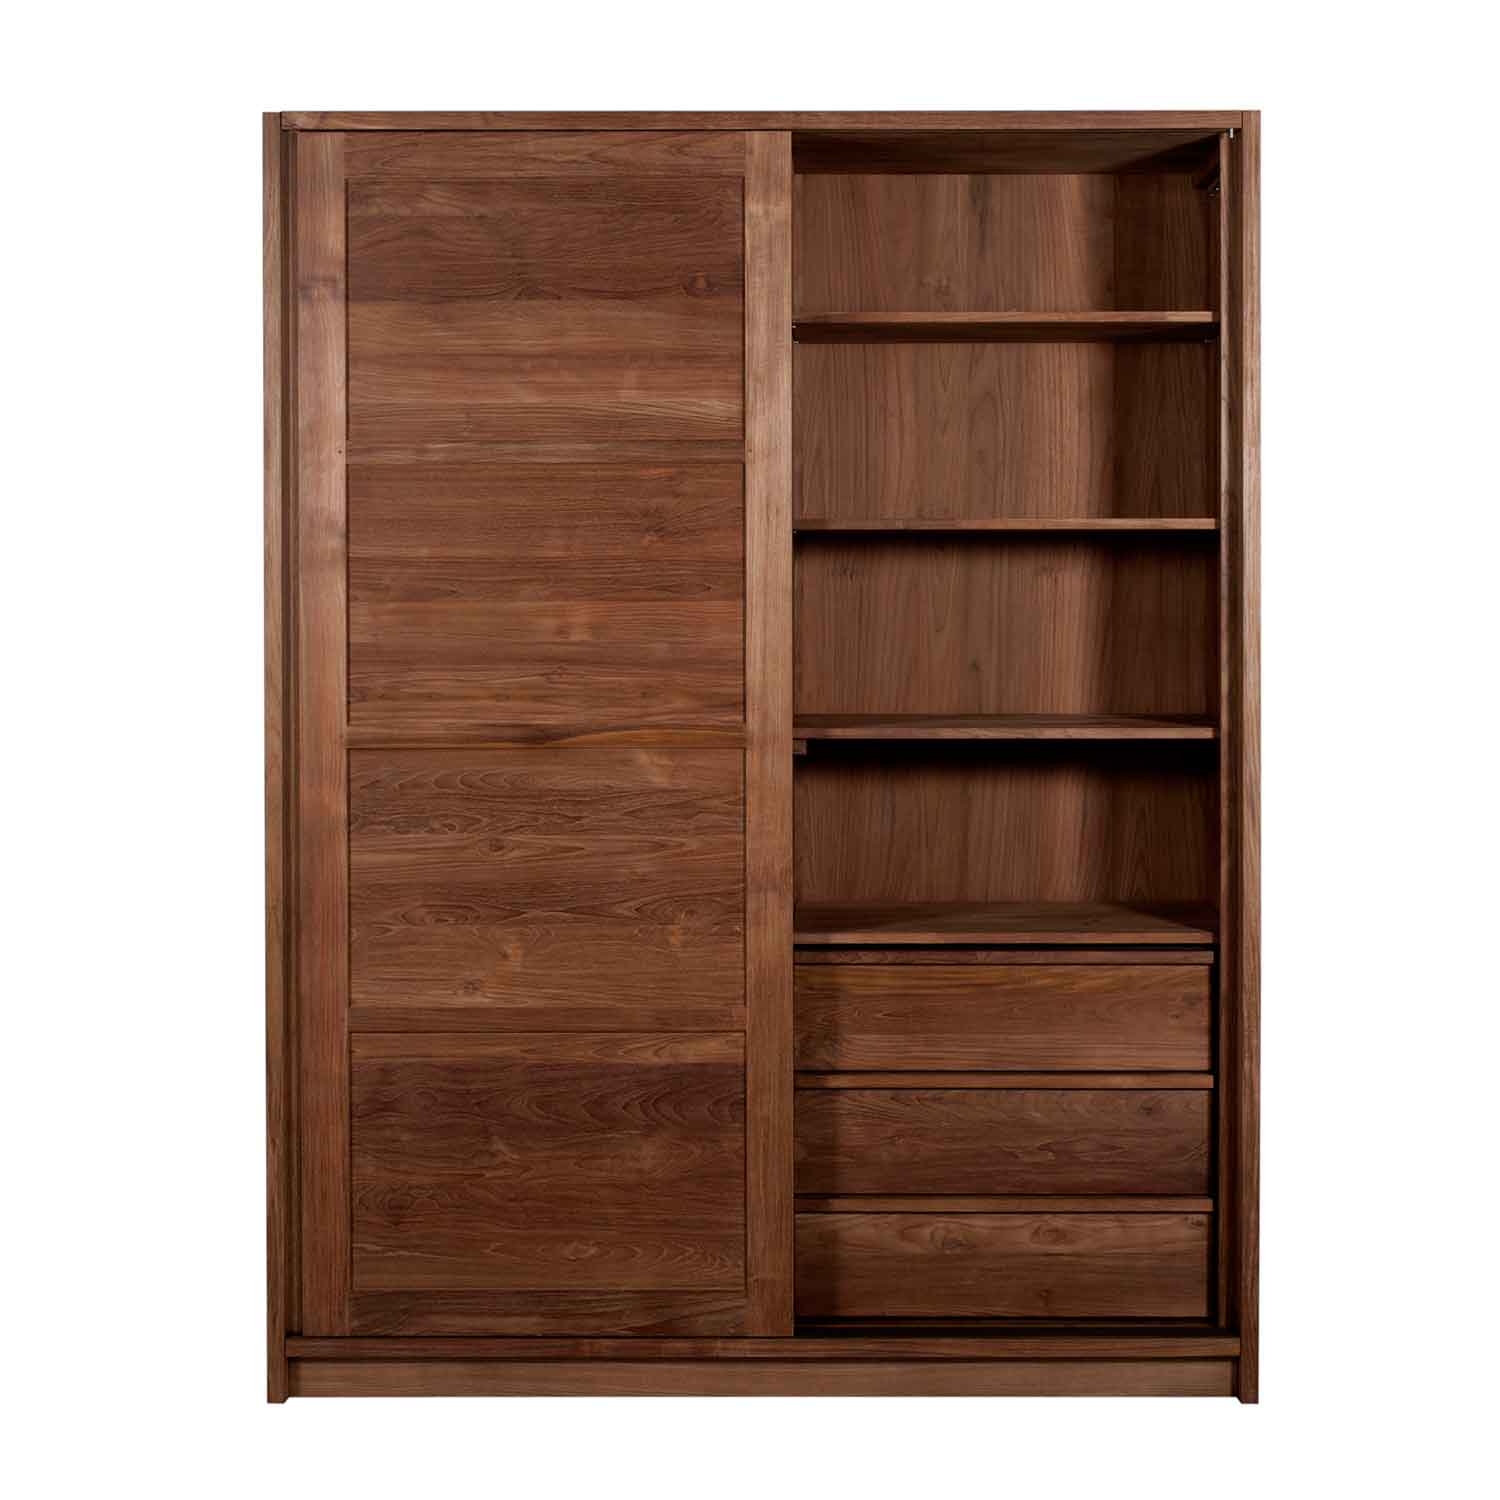 Teak wood wardrobe| Teak wardrobe| teak wardrobe furniture